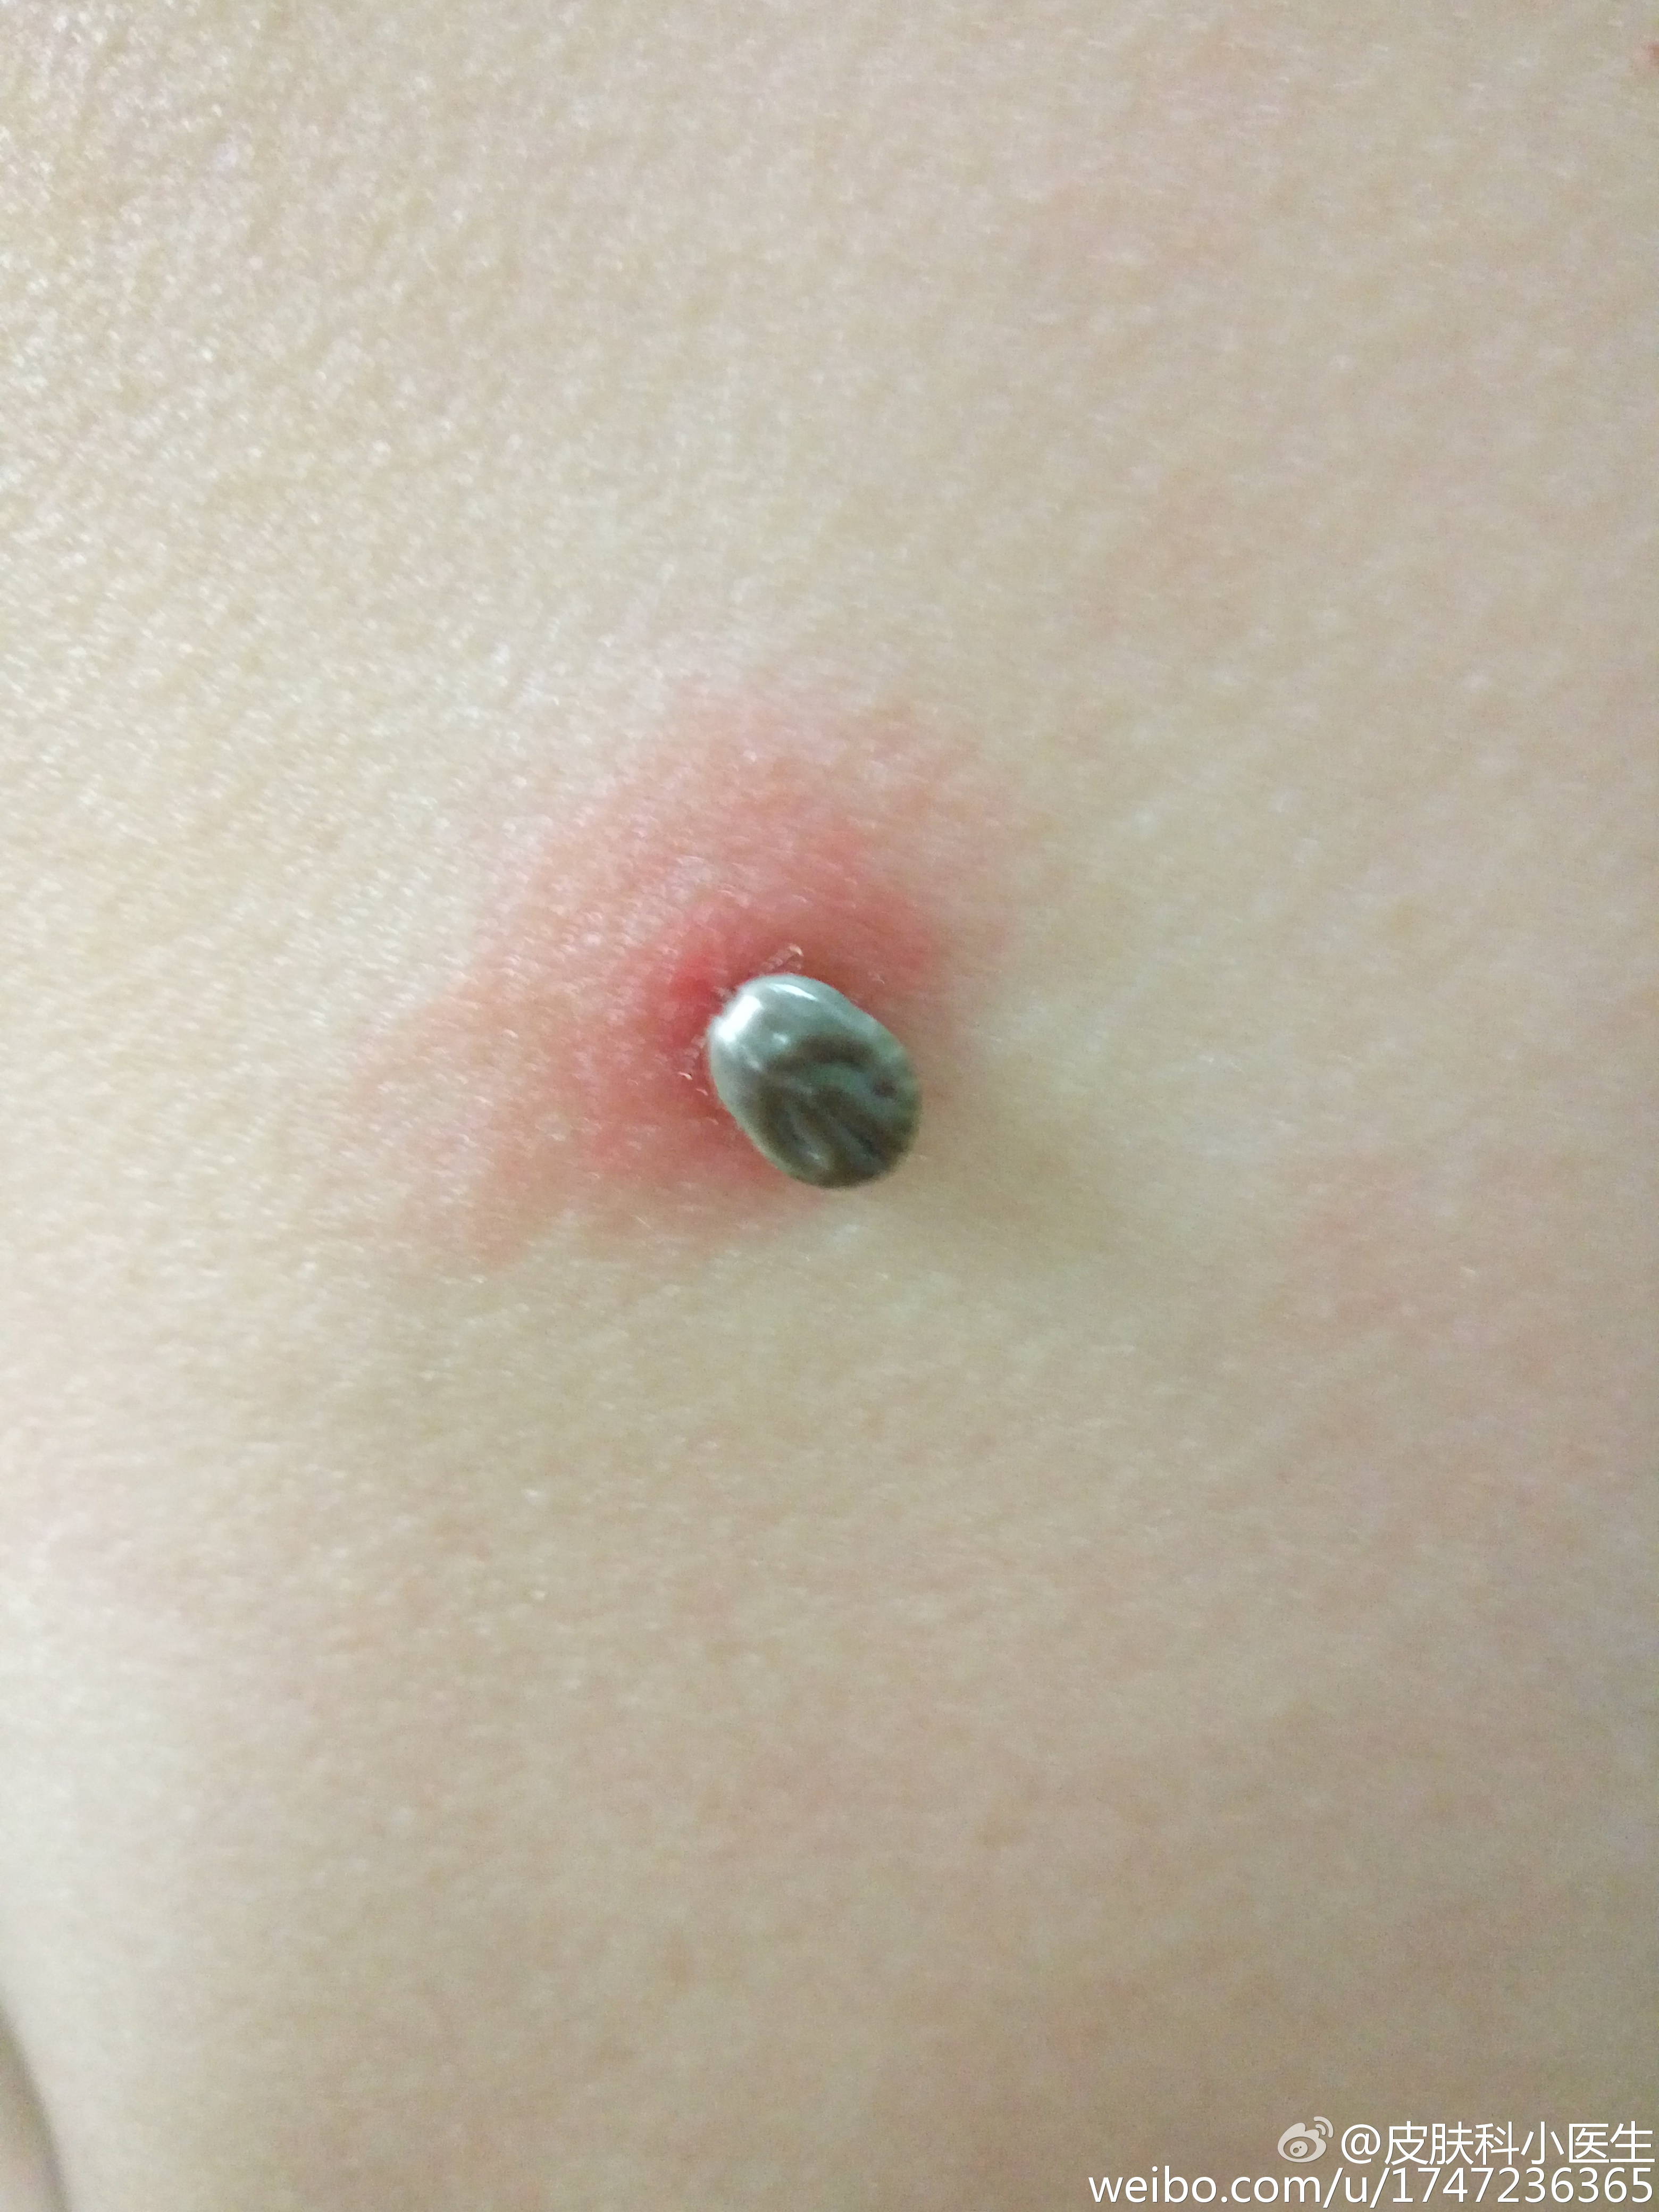 图1是蜱虫扒在患者背部皮肤上